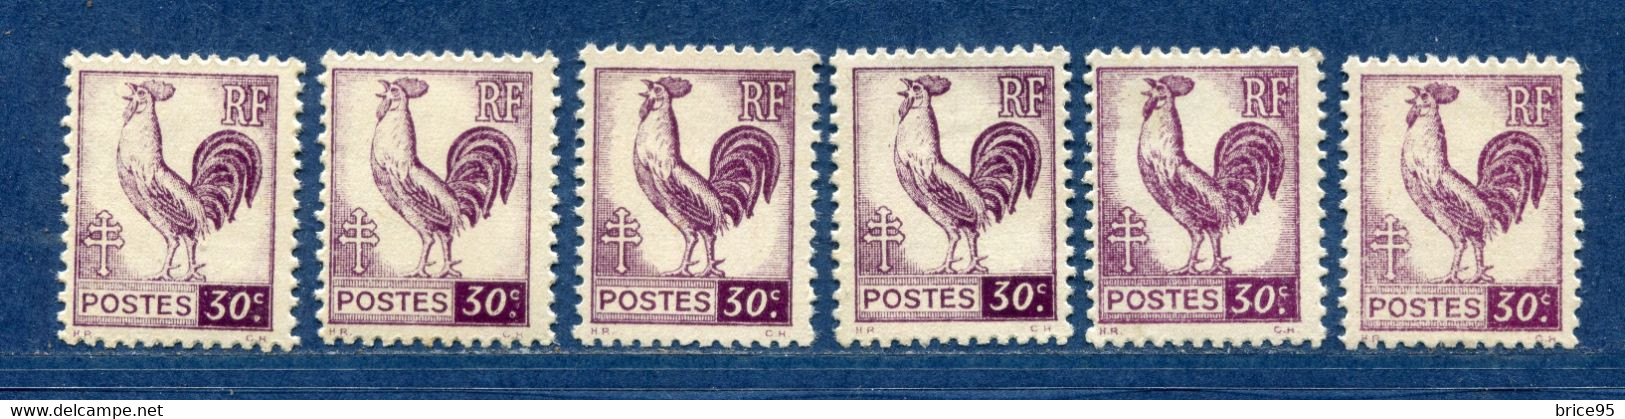 ⭐ France - Variété - YT N° 631 - Couleurs - Pétouilles - Neuf Sans Charnière - 1944 ⭐ - Unused Stamps